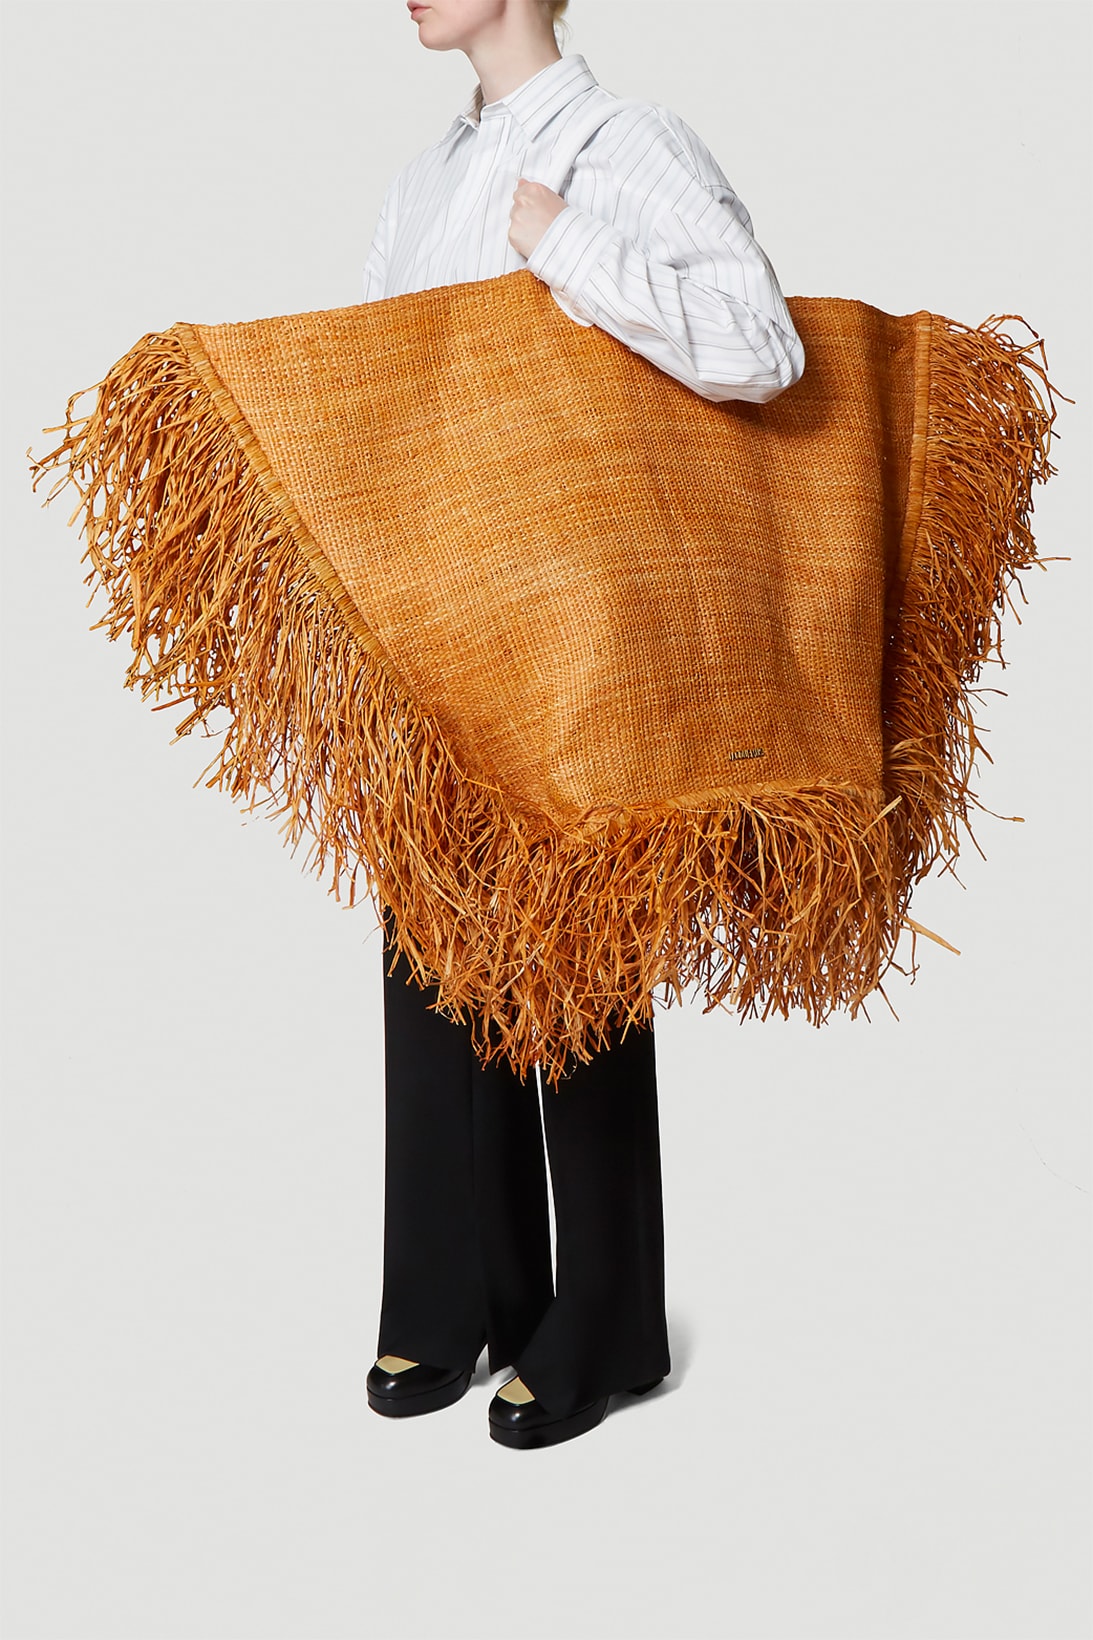 jacquemus le baci bag beige straw oversized fashion designer